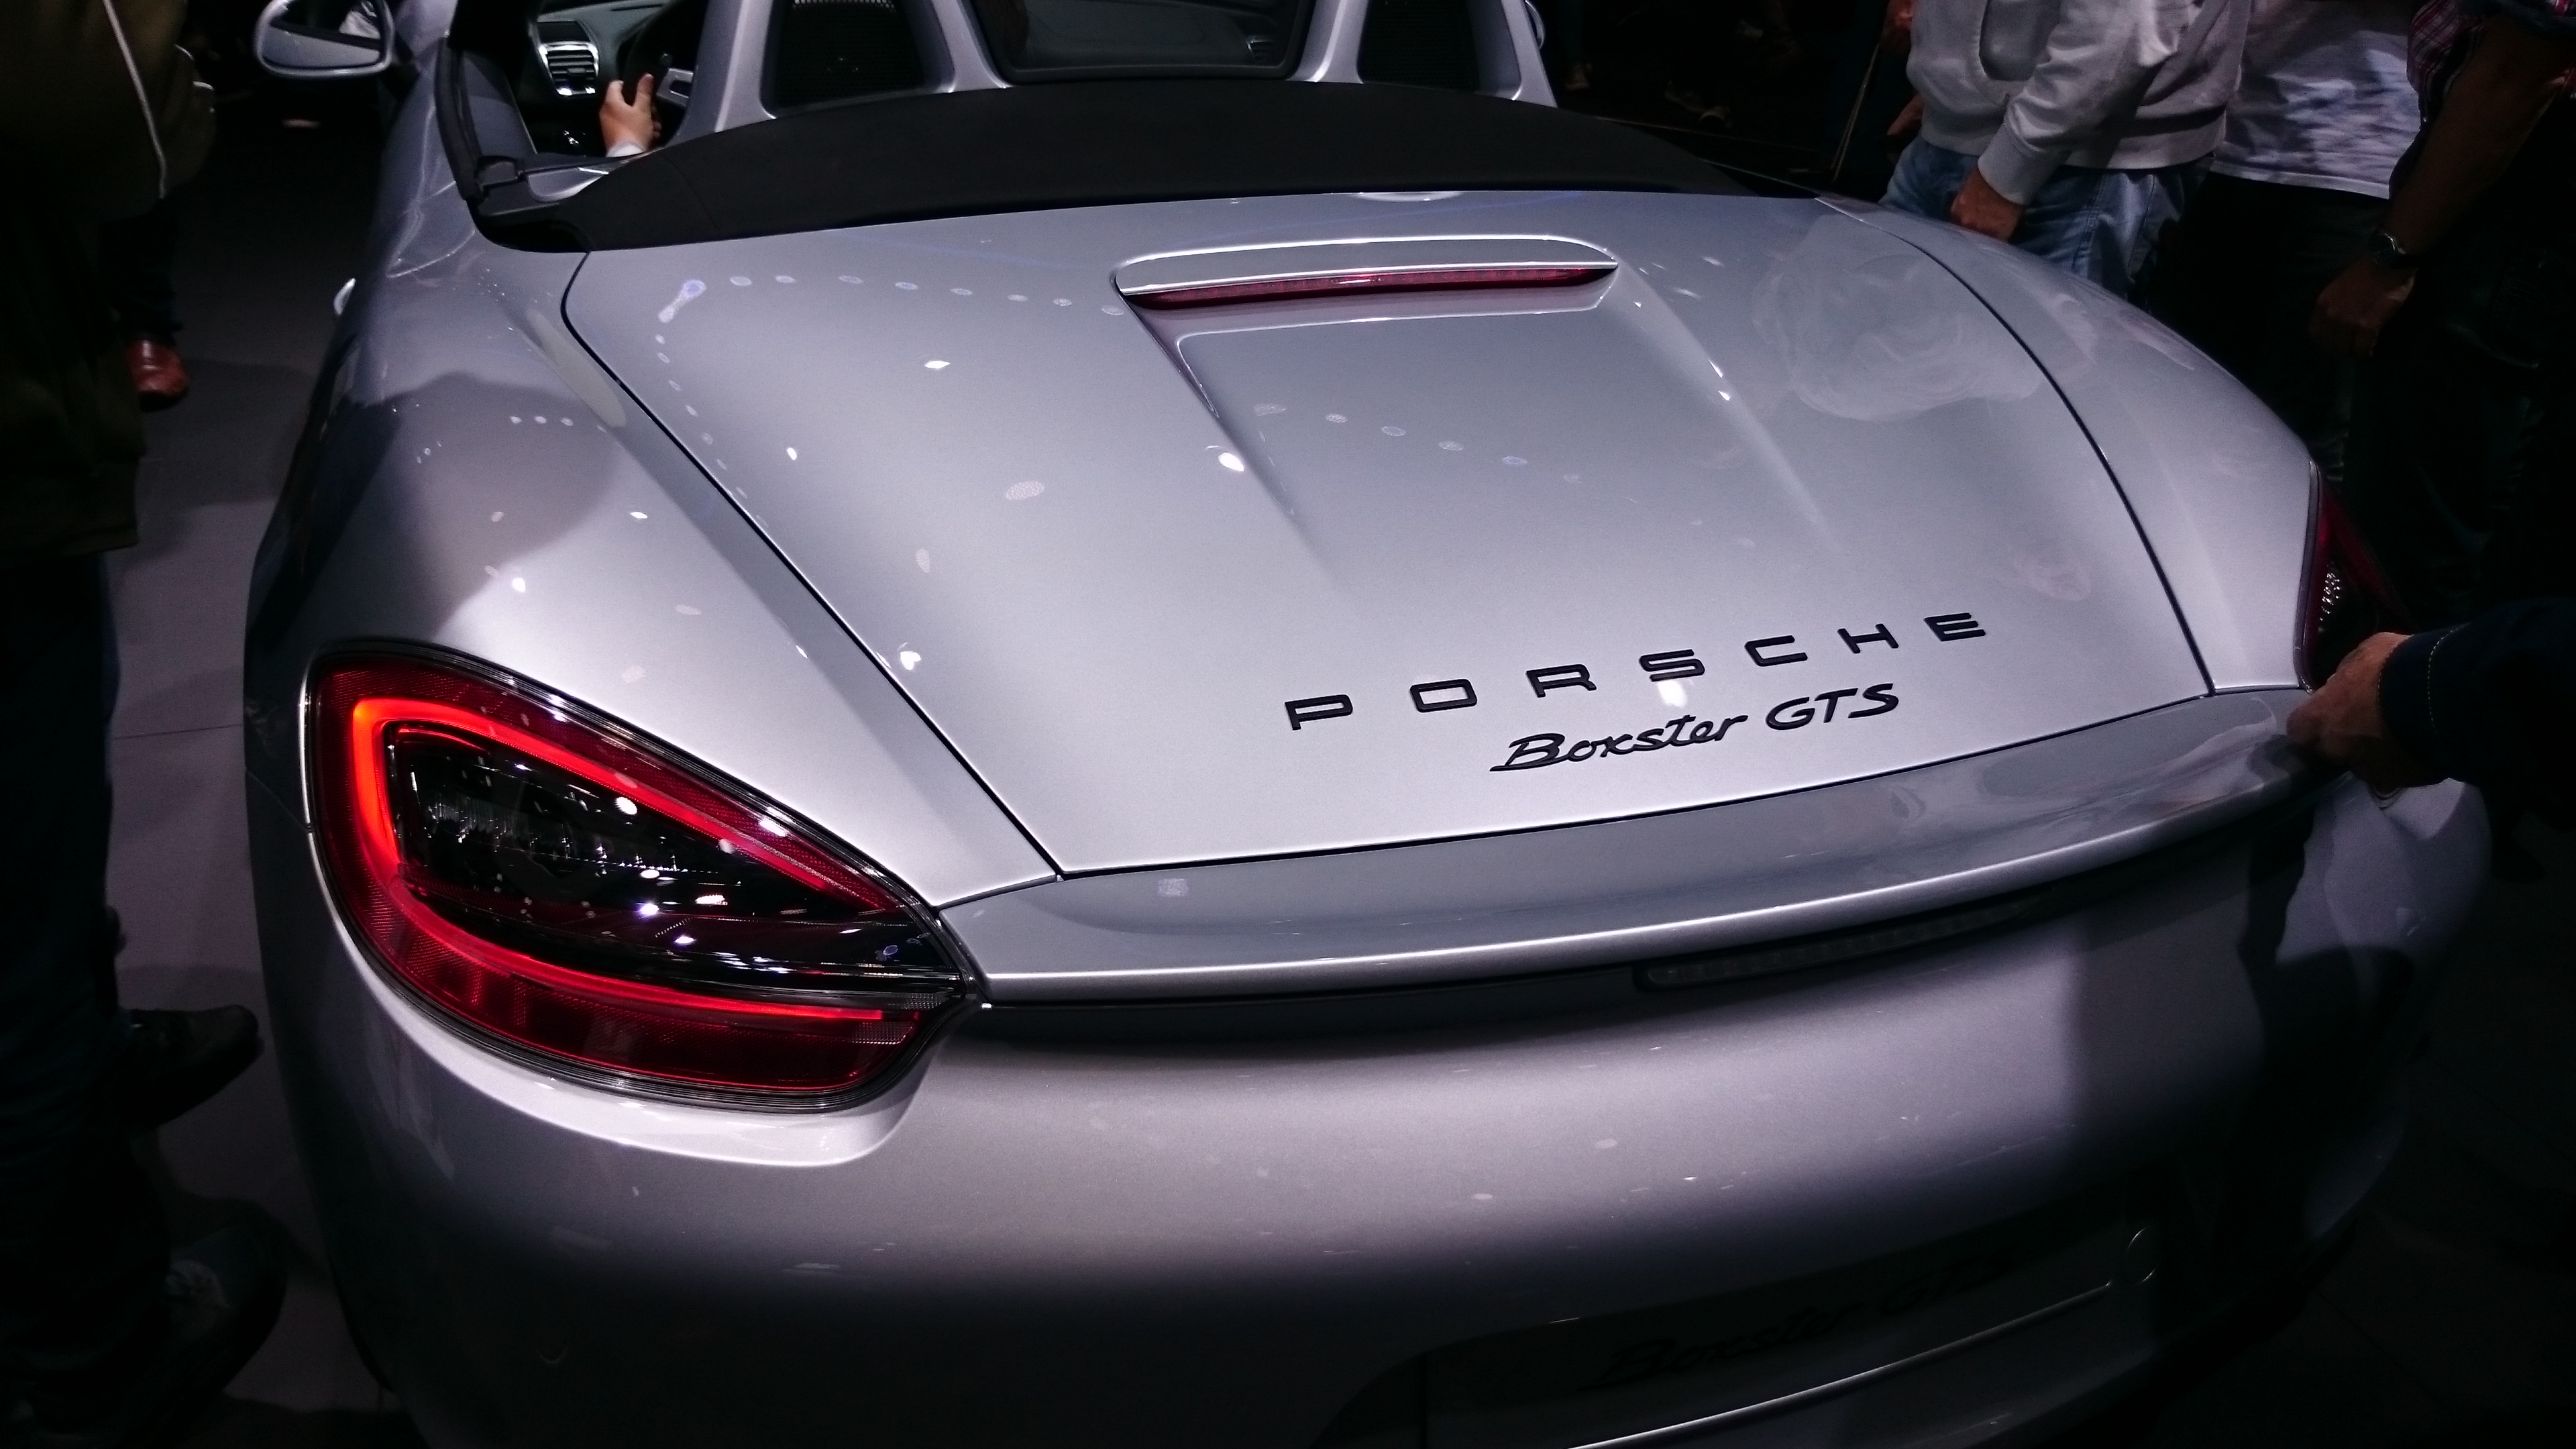 Fotos normales Porsche Boxster GTS #VidePan en #IAA2015